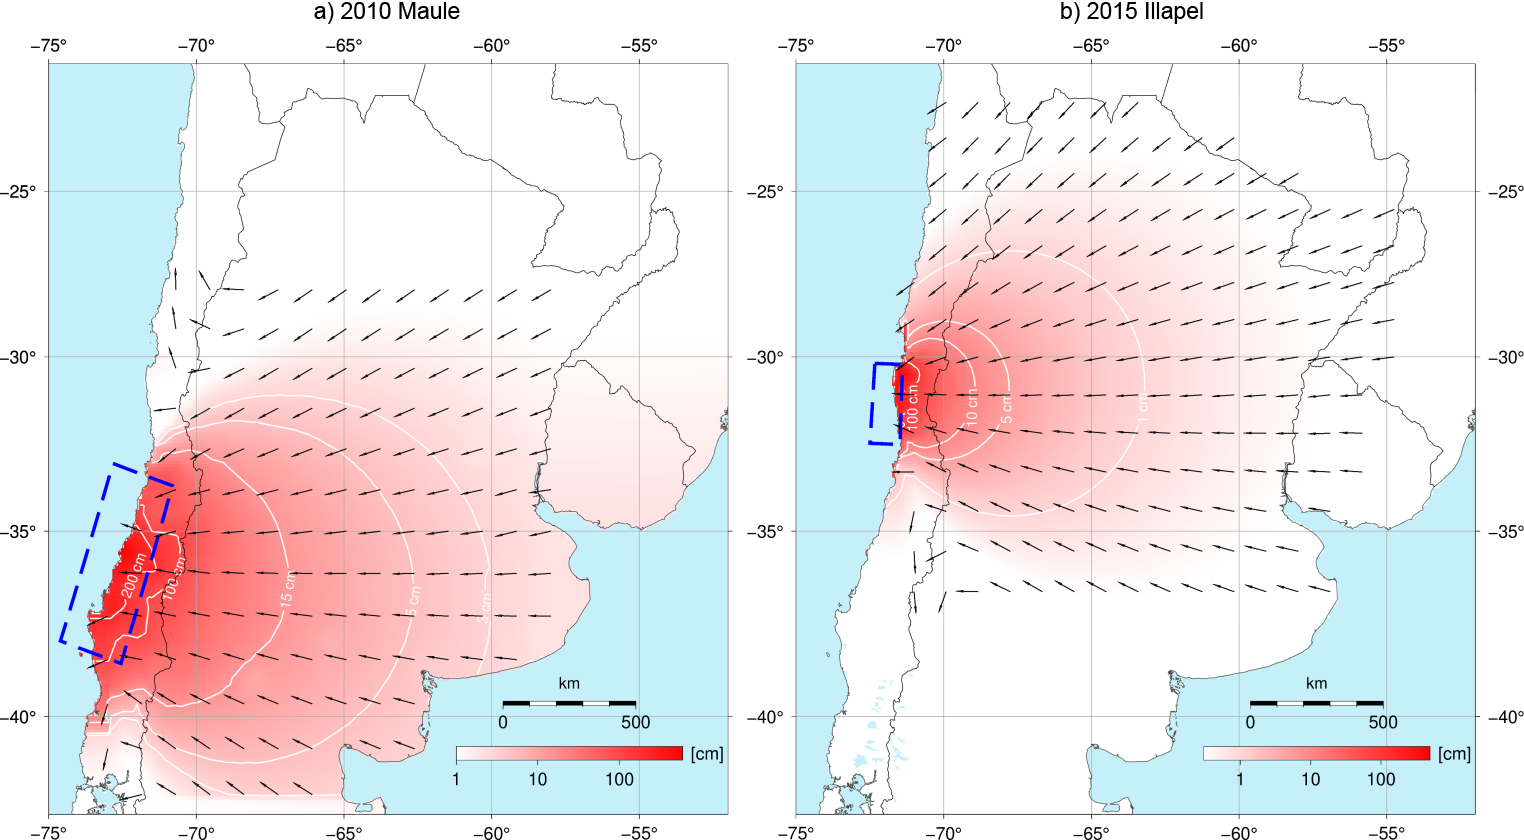 Figura 1. a) Modelo de desplazamiento cosísmico del sismo del 27 de febrero de 2010 en Maule, Chile y b)  Modelo de desplazamiento cosísmico del sismo del 16 de septiembre de 2015 en Illapel, Chile